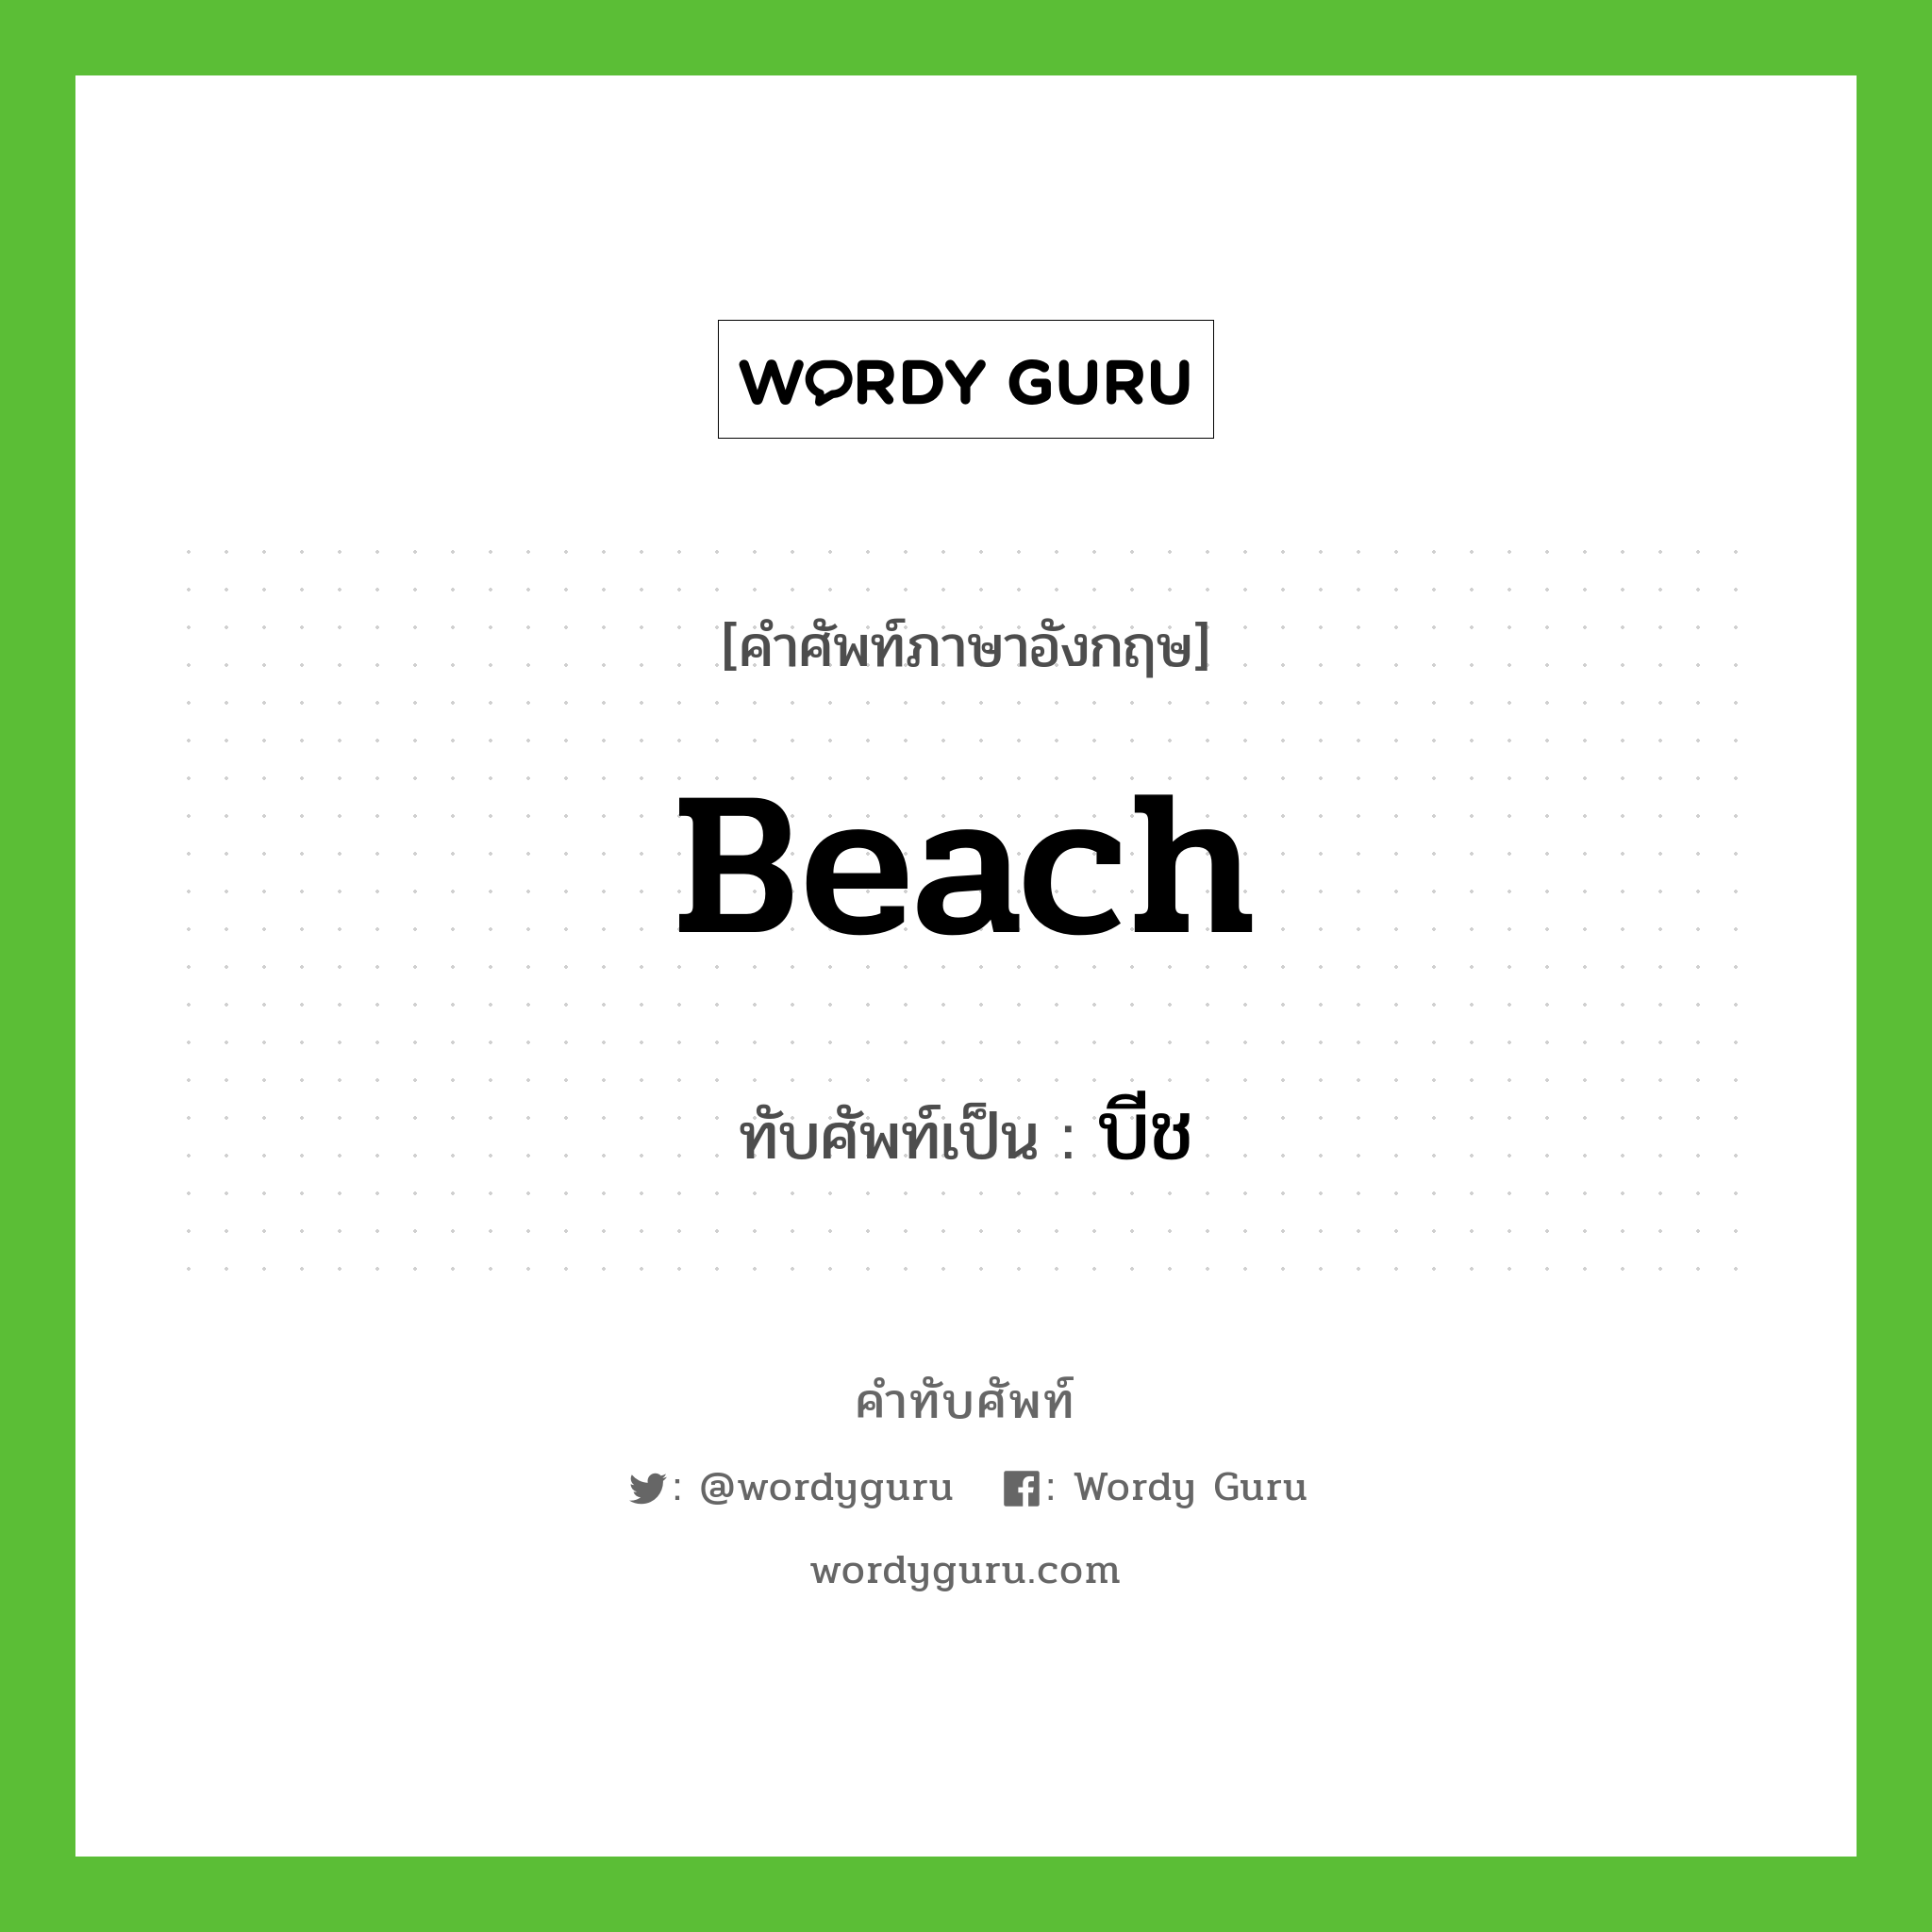 beach เขียนเป็นคำไทยว่าอะไร?, คำศัพท์ภาษาอังกฤษ beach ทับศัพท์เป็น บีช